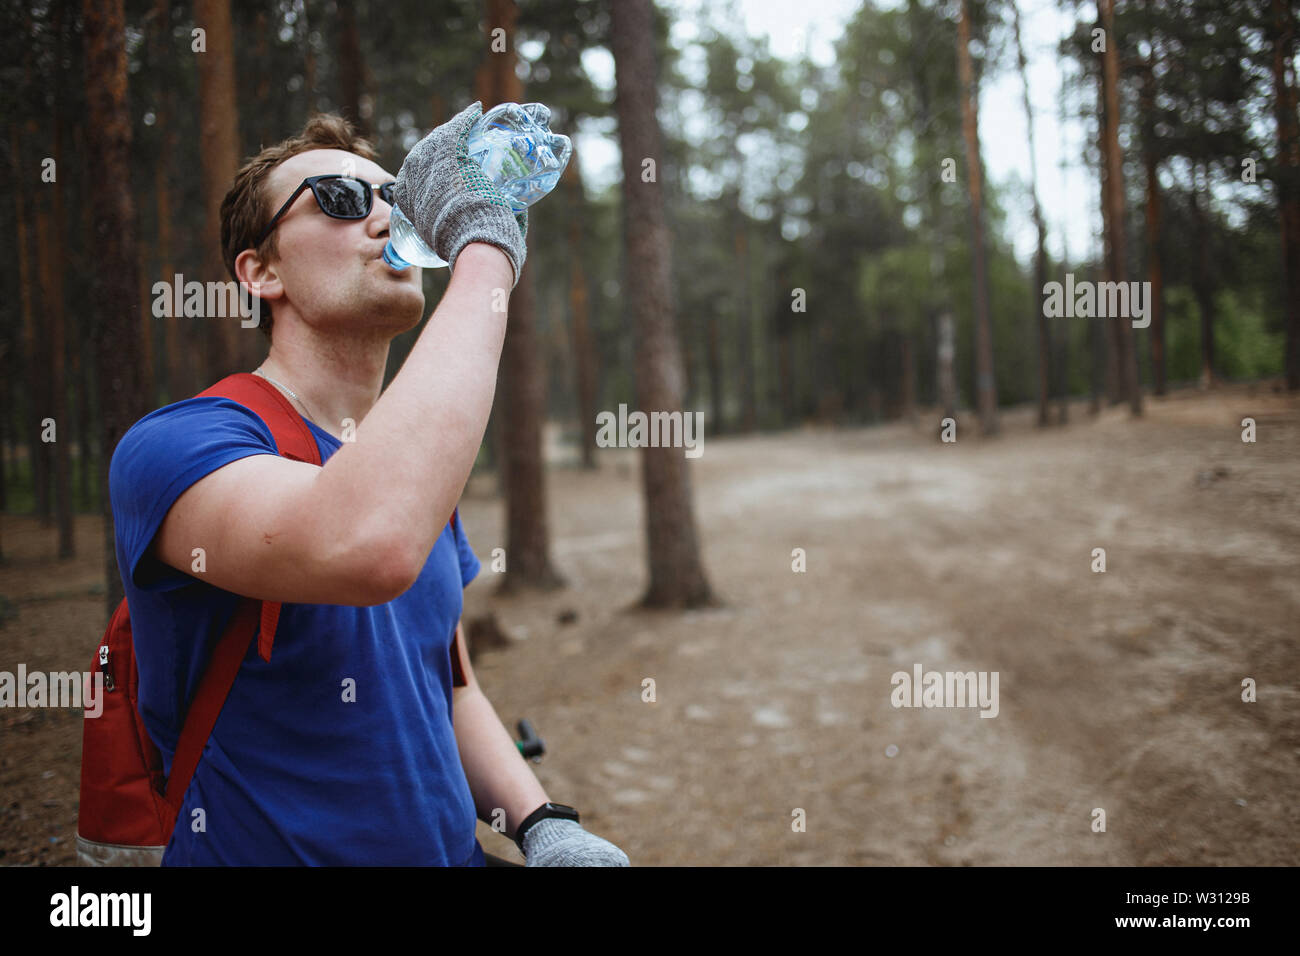 Hübscher junger Mann amateurl cyclistdrinking Wasser aus der Flasche, Fahrrad genießen in einem Pinienwald. Erholung der Sportler. Stockfoto